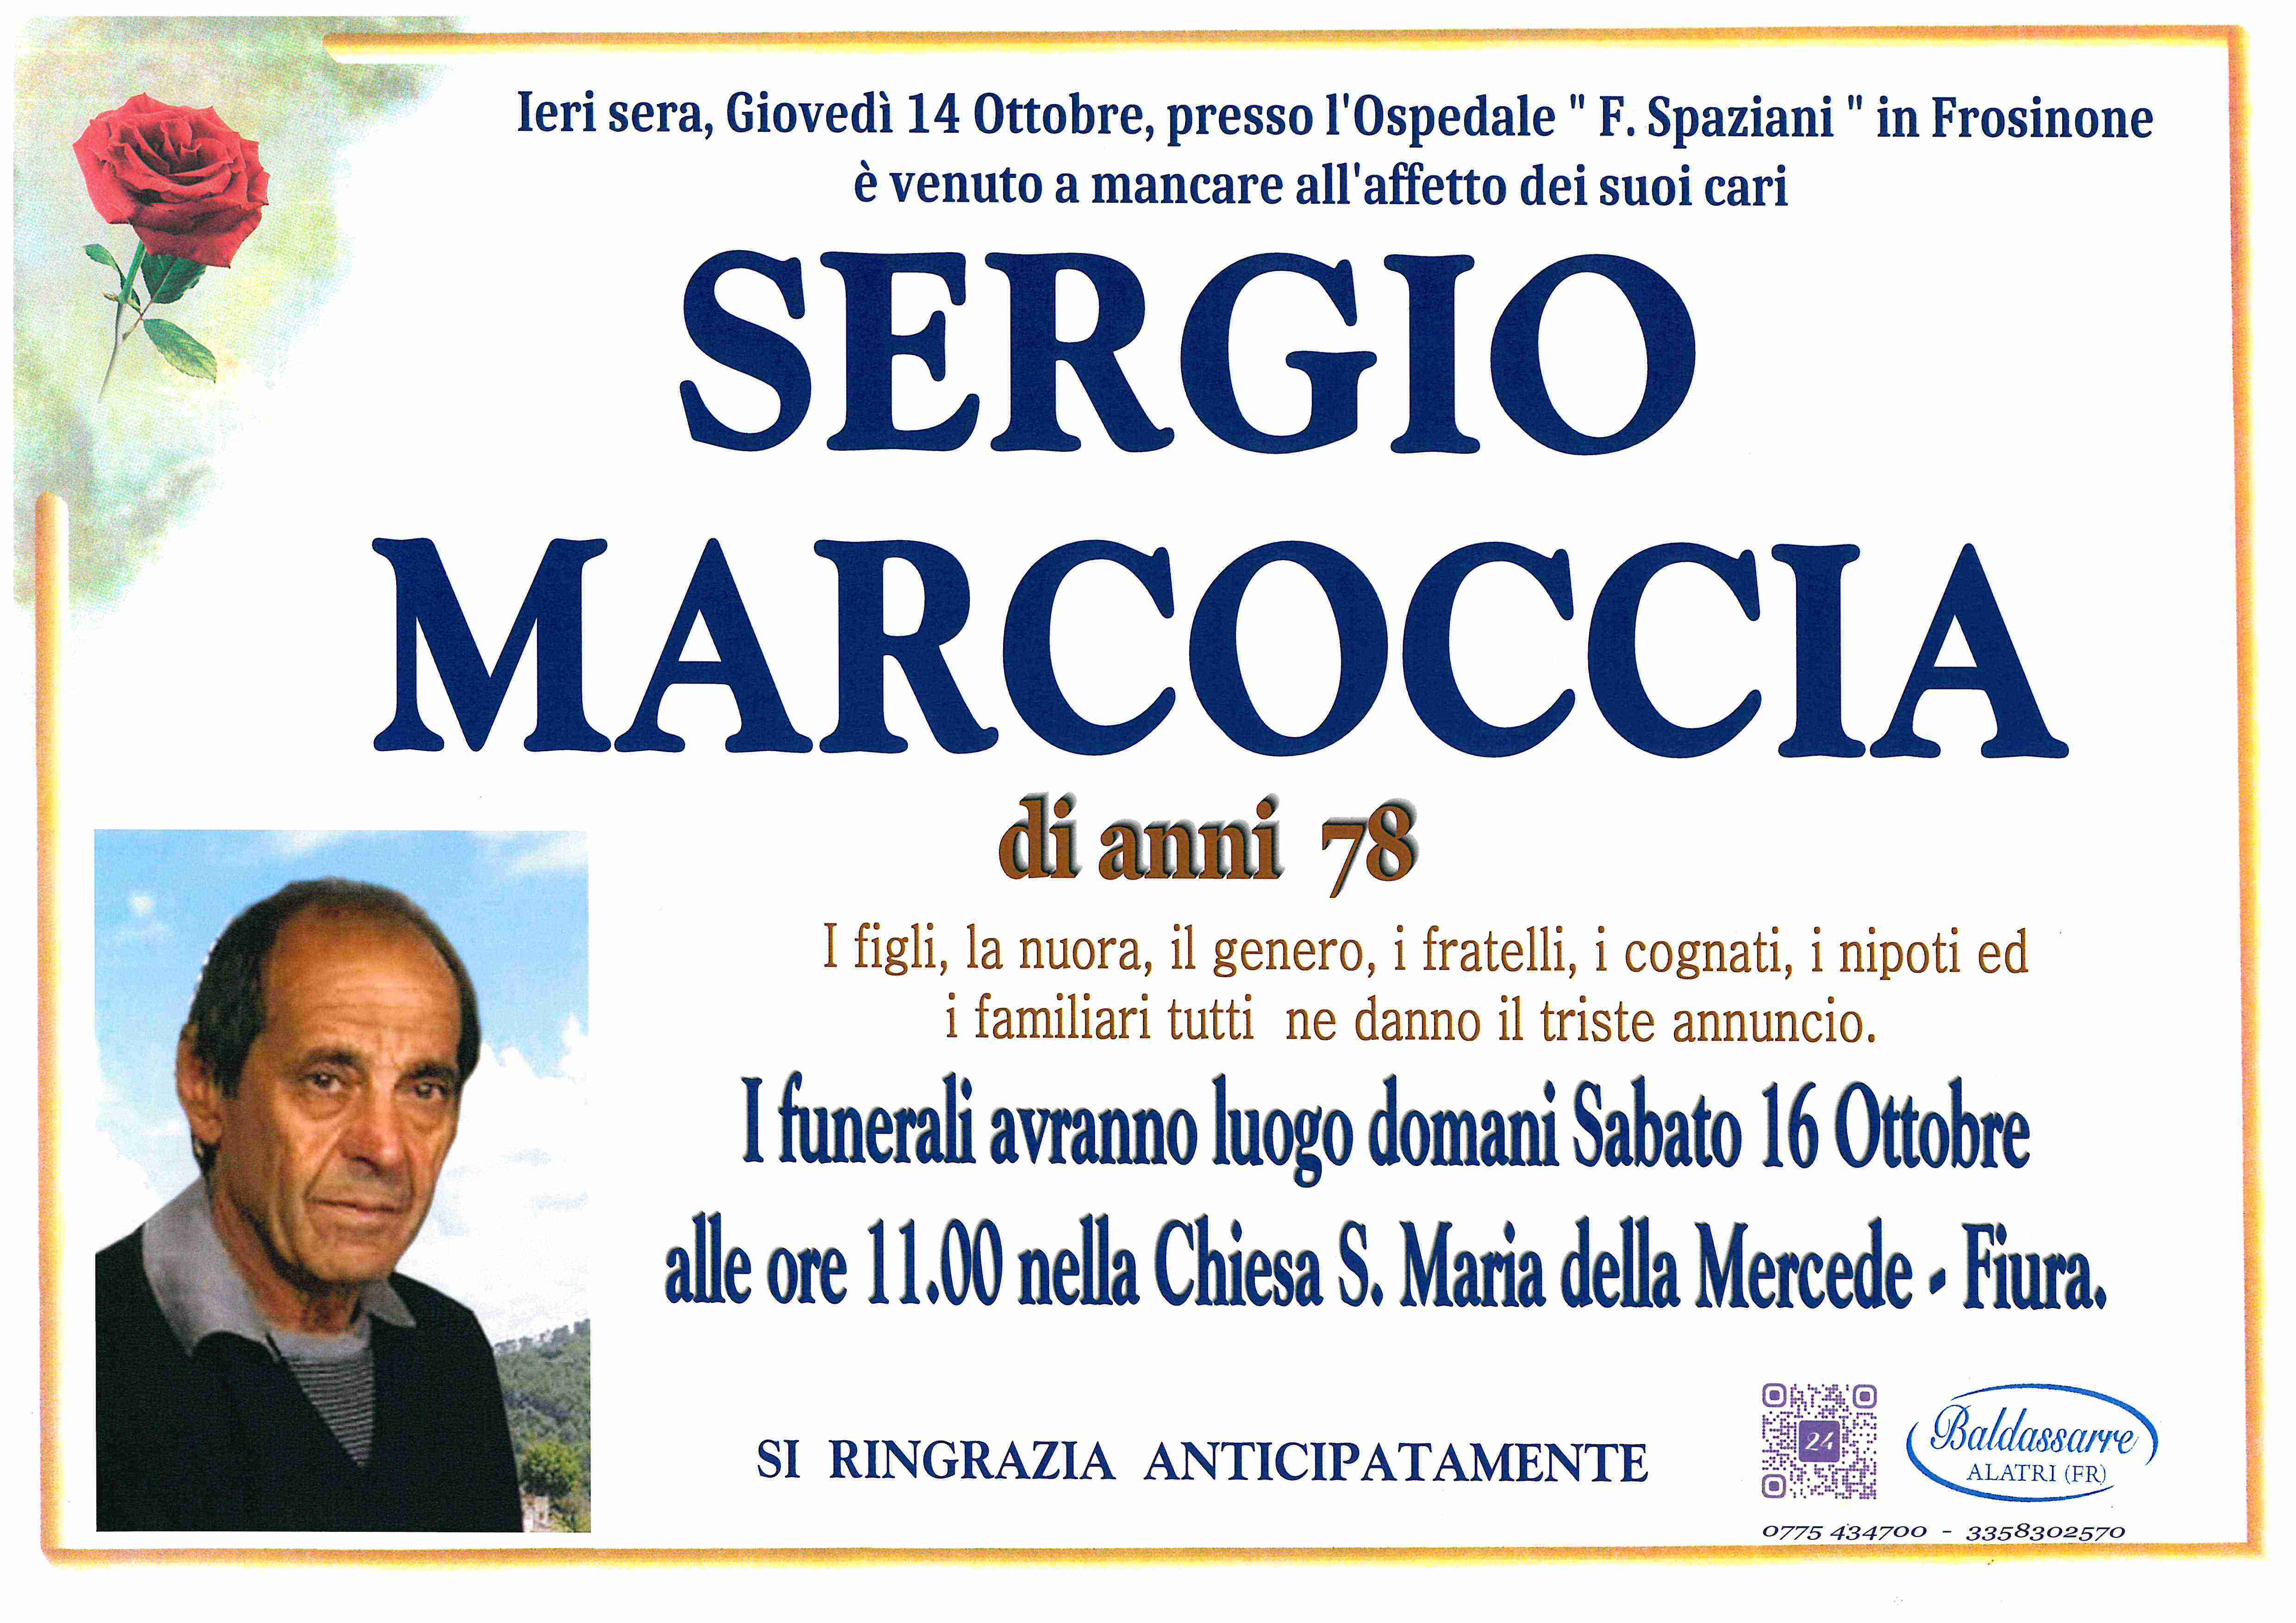 Sergio Marcoccia